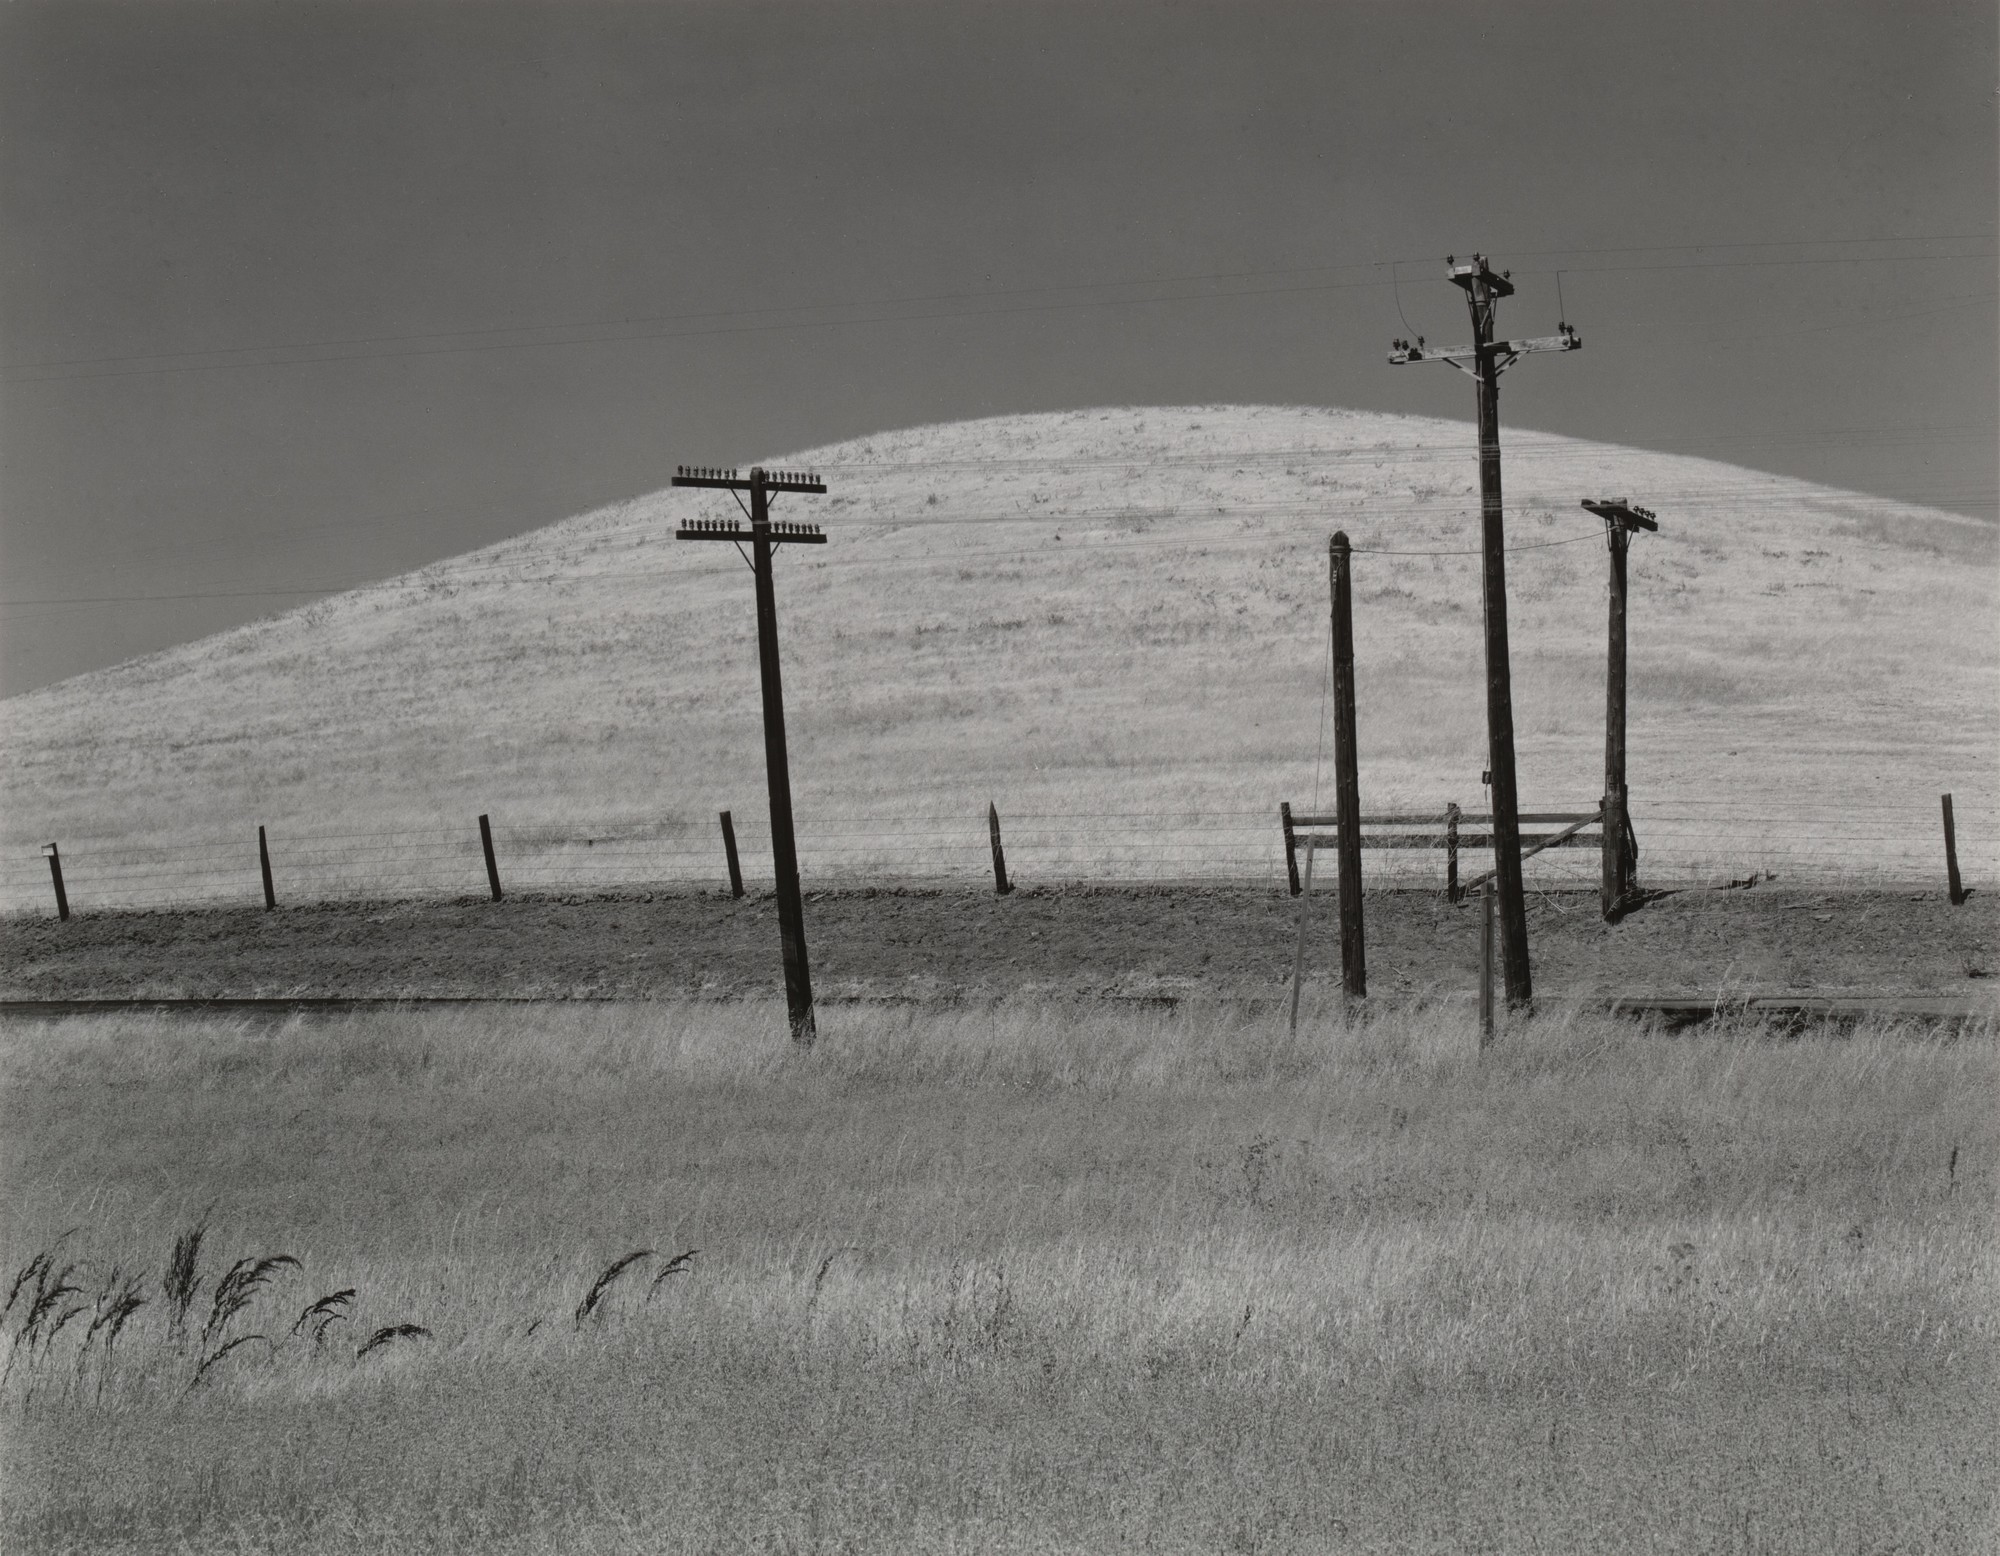 Холм и столбы. Округ Солано, 1937. Фотограф Эдвард Уэстон